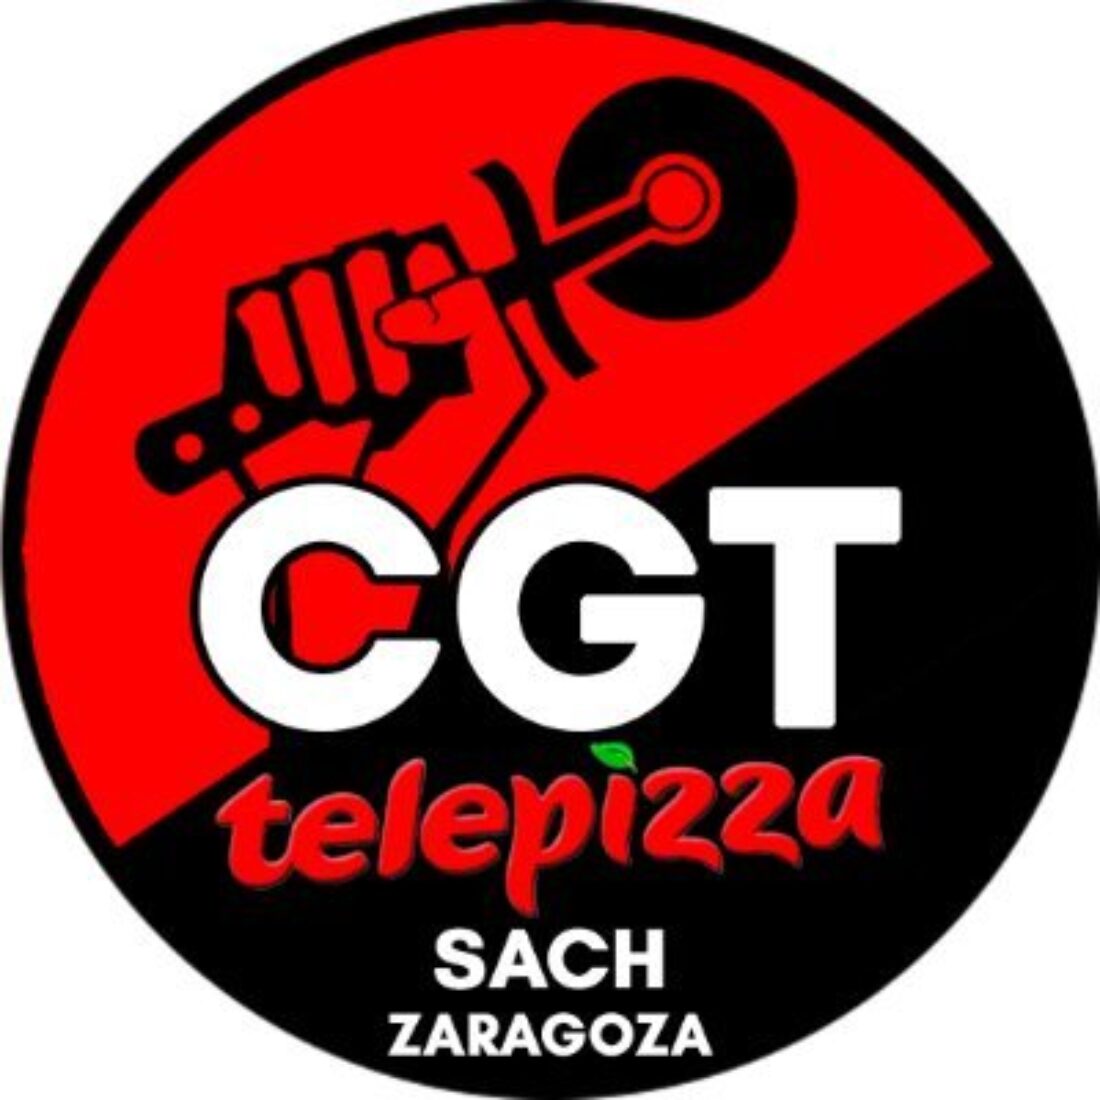 Telepizza en Madrid lleva 2 meses sin pagar a sus trabajadores. CGT responde a las mentiras de la  patronal